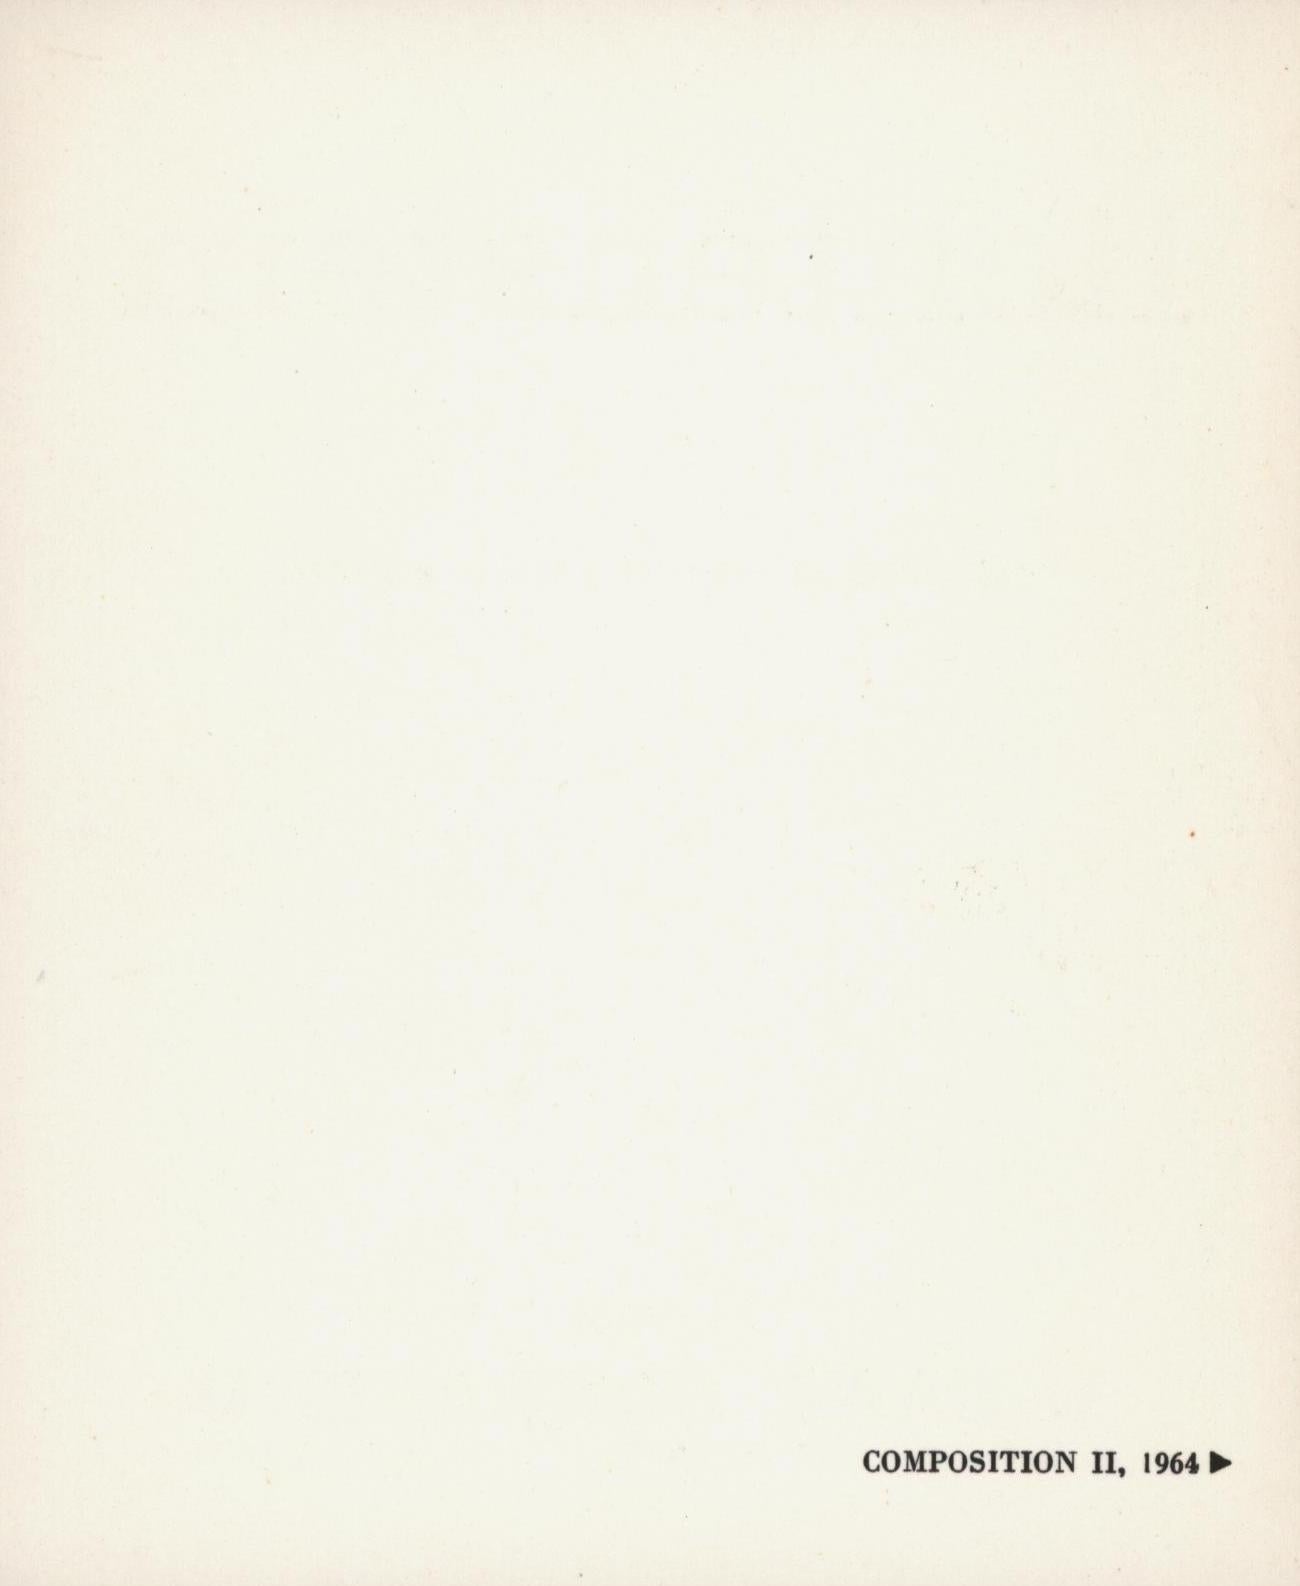 Roy Lichtenstein Compositions announcement 1965 (Sonnabend) - Pop Art Photograph by (after) Roy Lichtenstein